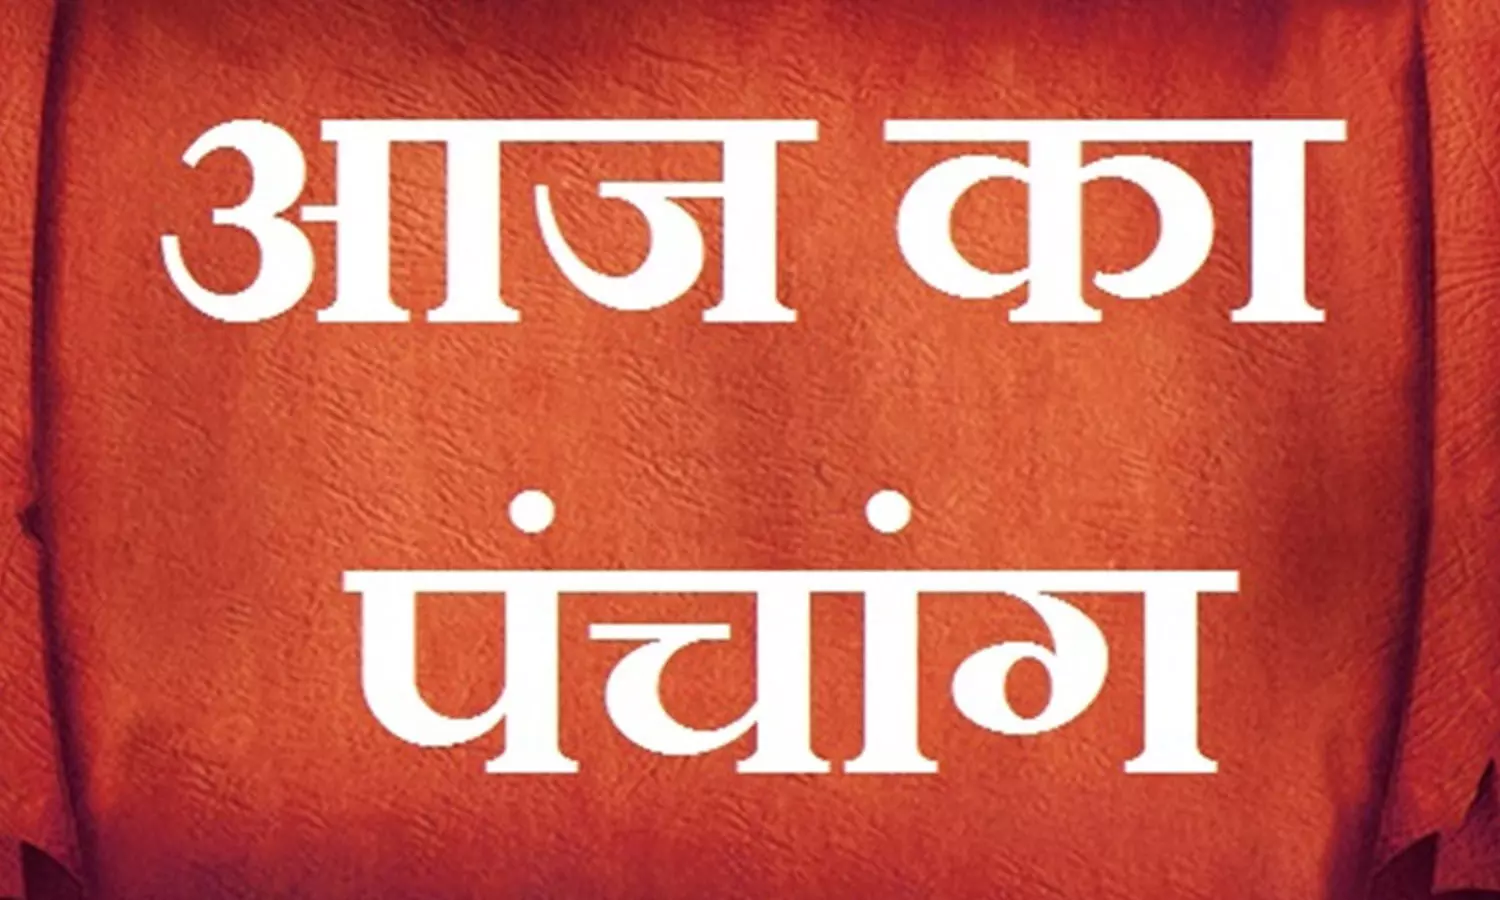 22  February 2023 Ka Panchang Tithi in Hindi : आज कब से कब तक है द्विपुष्कर योग और गण्डमूल नक्षत्र, जानिए आज का पंचांग